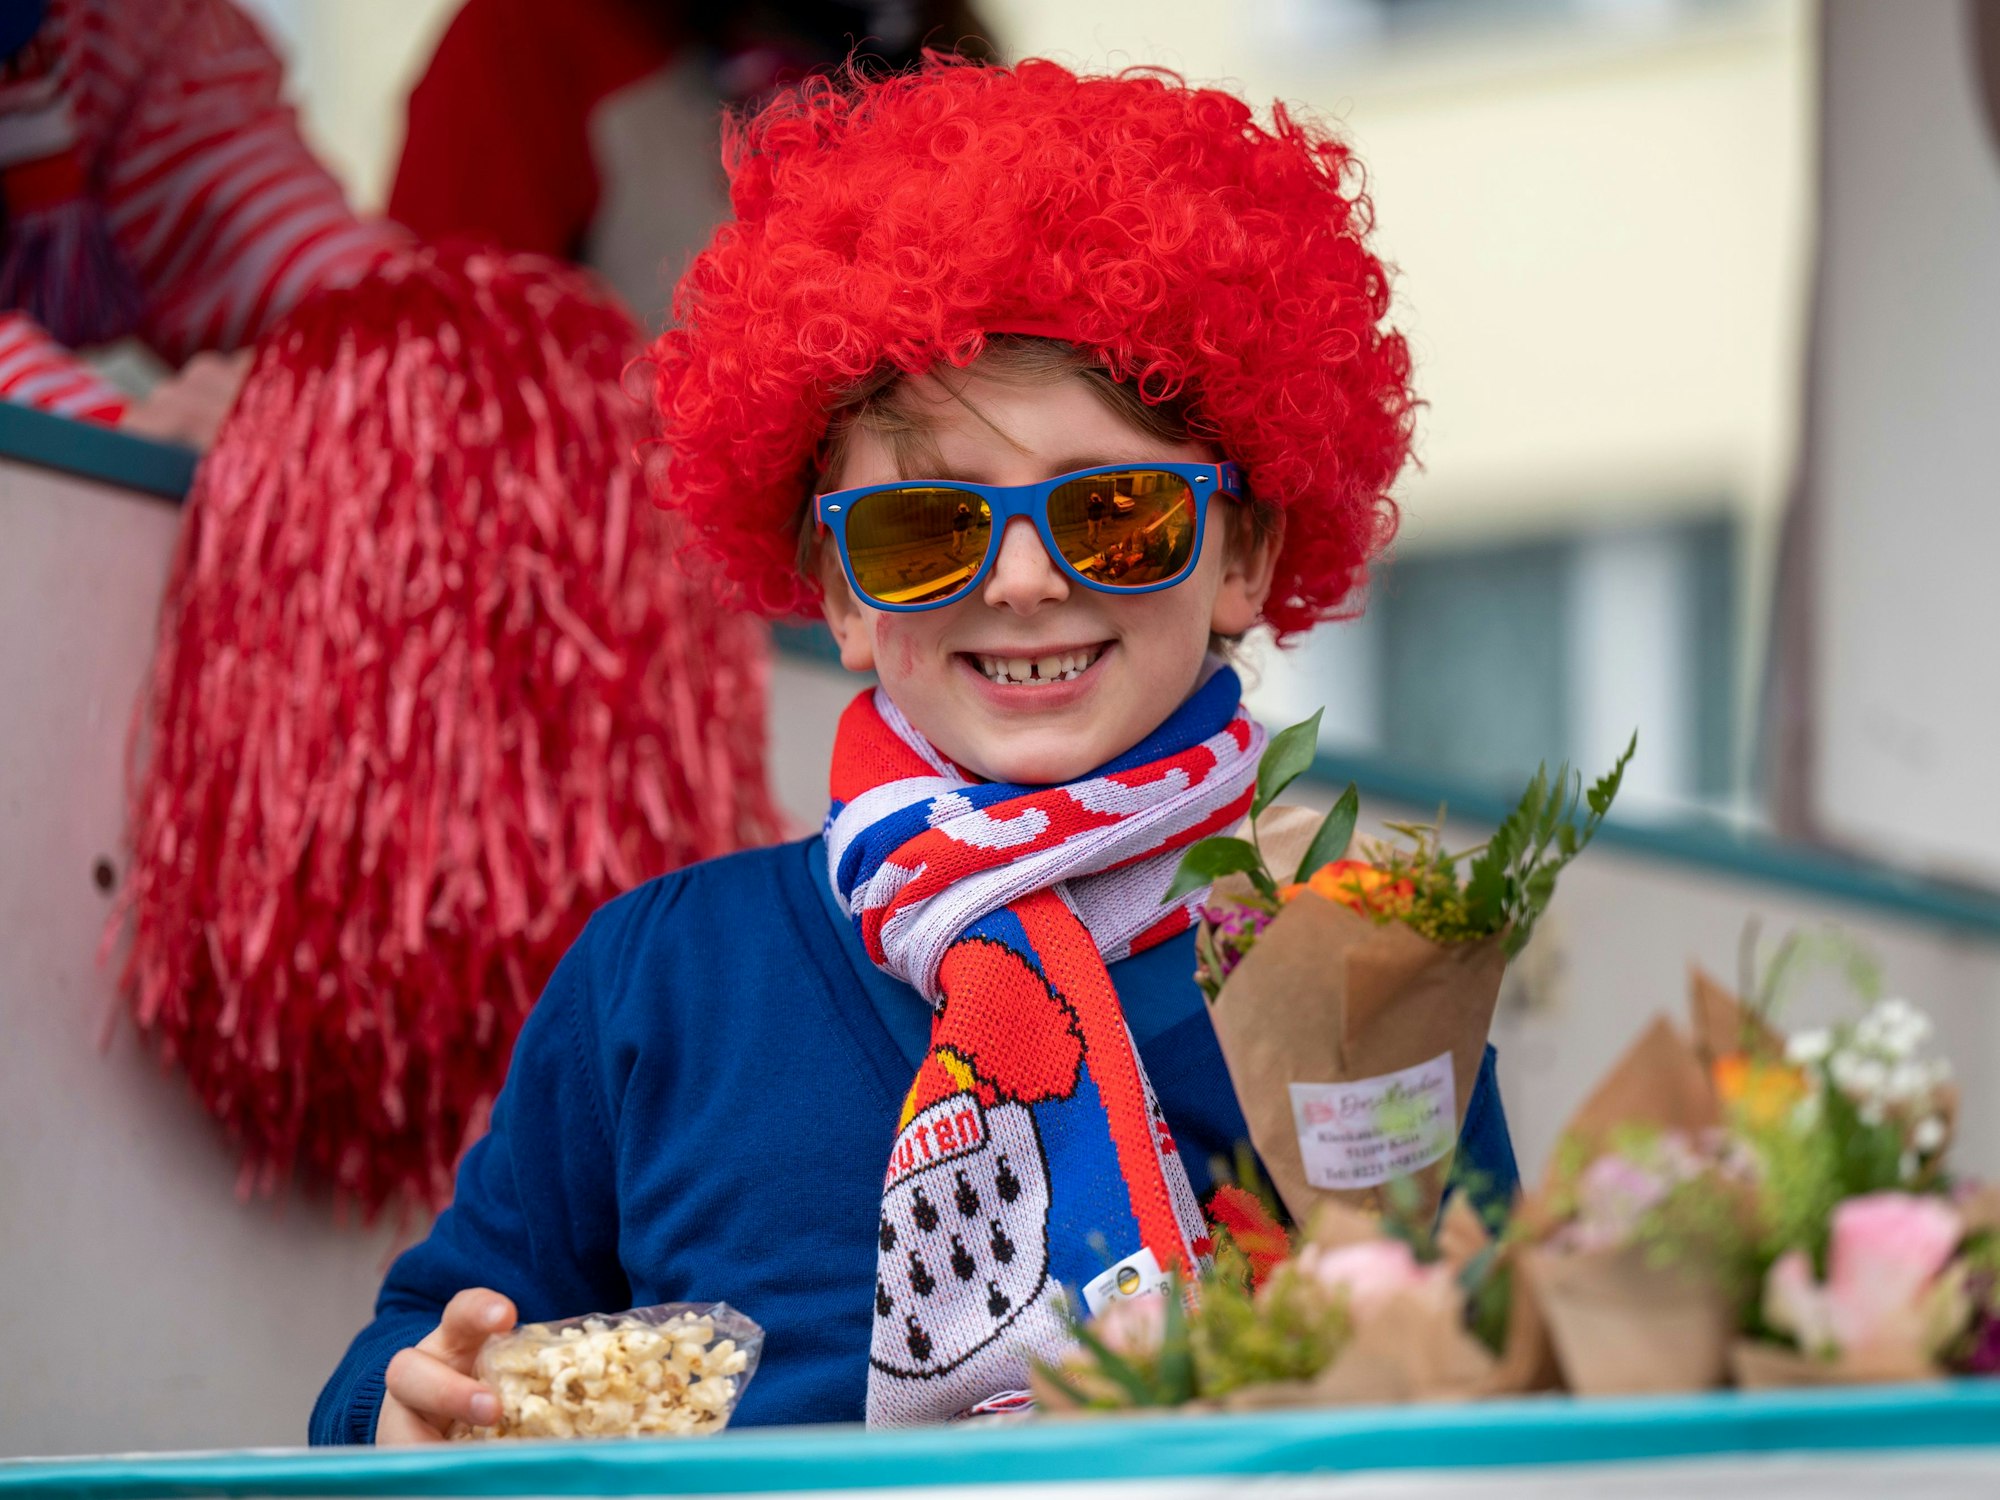 Die gute Laune war den Teilnehmenden beim Karnevalszug im Merheimer Veedel am 10. Februar anzusehen. Hier ein Junge auf einem Karnevalswagen, der Strüßje und Popcorn in der Hand hält.